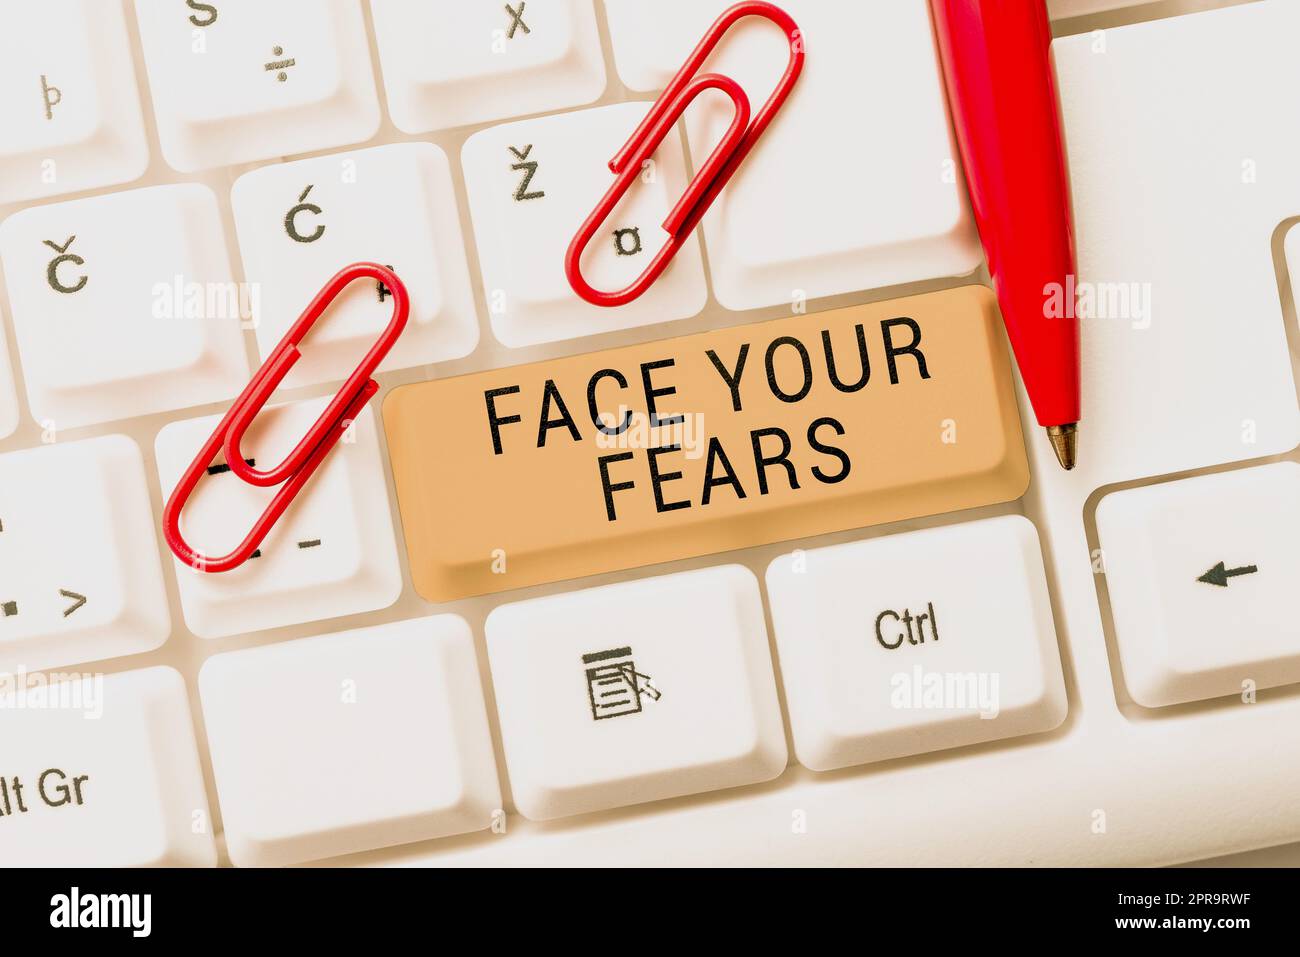 Textunterschrift präsentiert Gesicht Ihre Ängste. Internet-Konzept haben den Mut, Angst zu überwinden mutig sein furchtlos -48555 Stockfoto